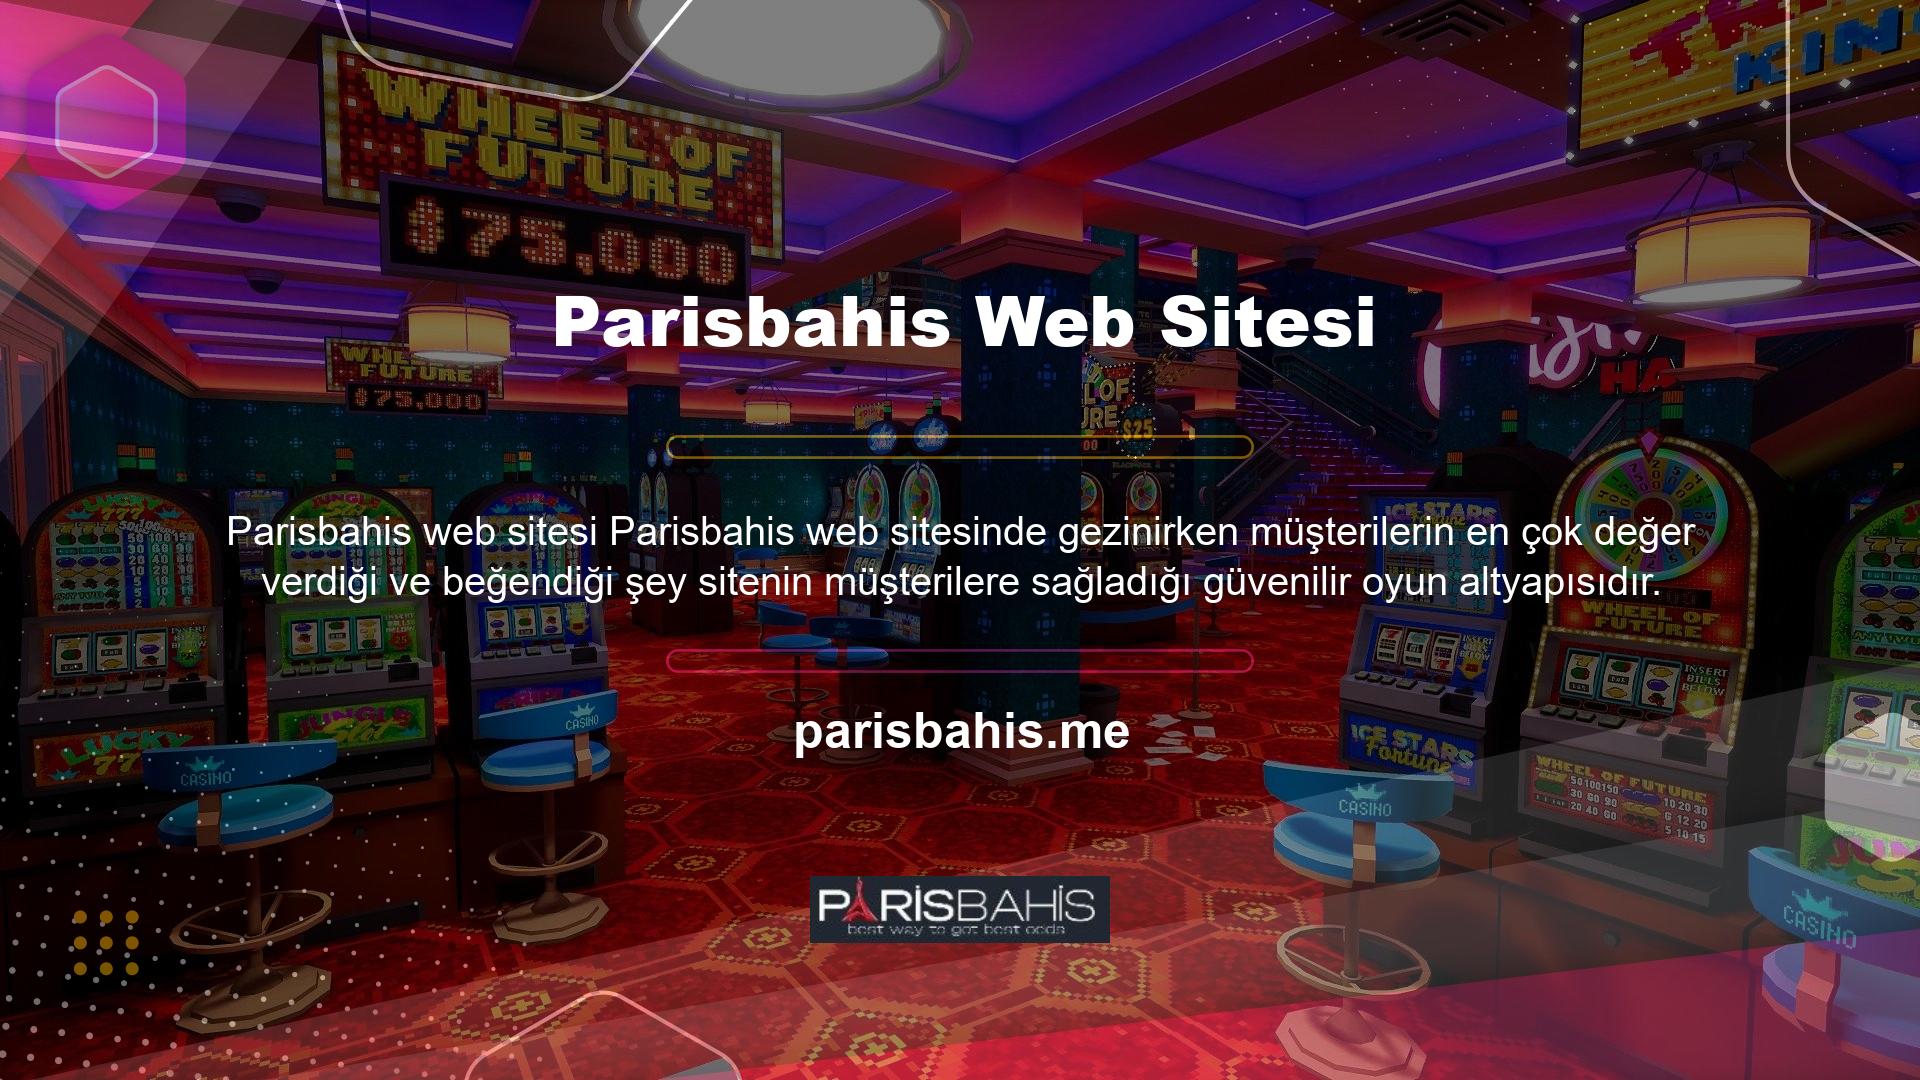 Parisbahis sitesinin müşterilerine sunduğu bu oyun altyapısı, sektördeki diğer sitelerden farklılaşmasında önemli rol oynamaktadır